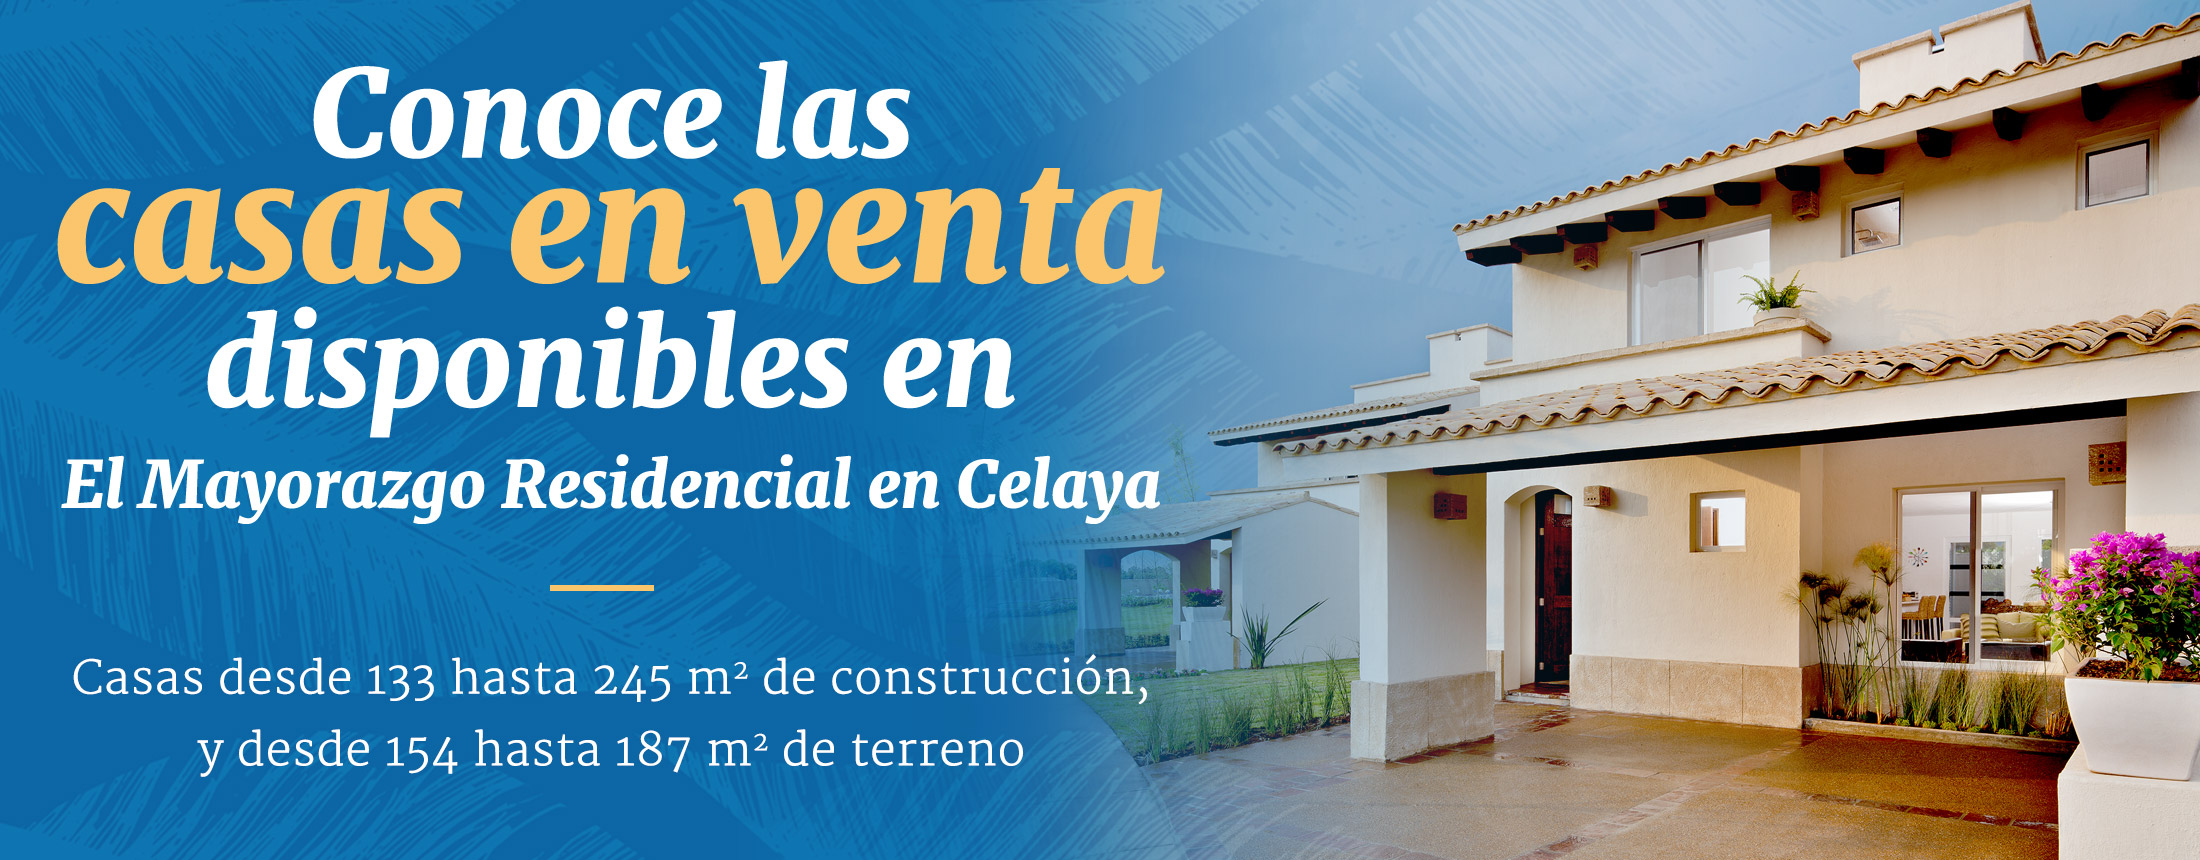 El Mayorazgo Residencial en Celaya - Venta de Terrenos y Casas en Celaya, Gto.